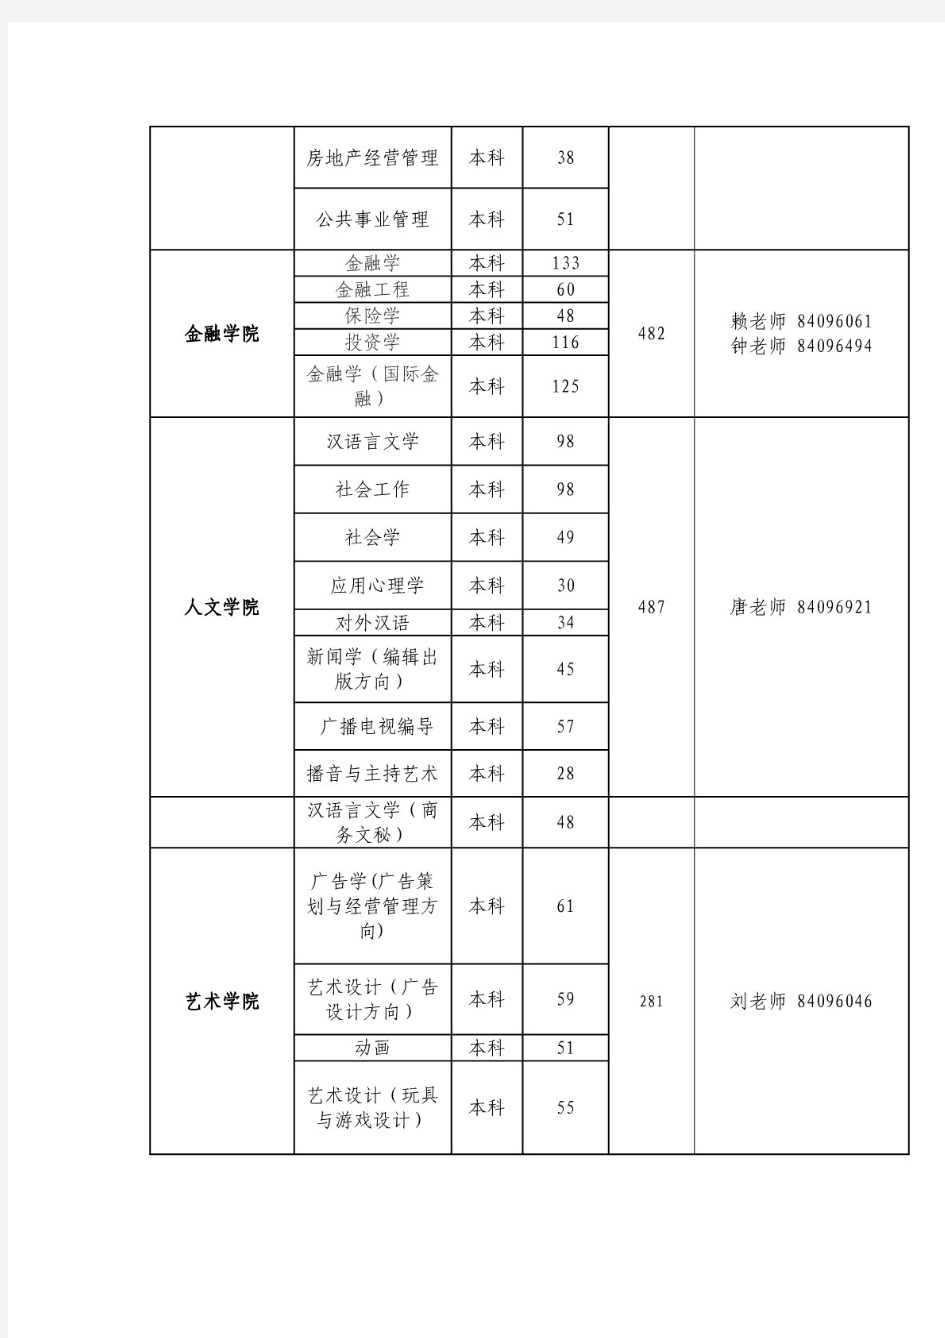 广东财经大学2014届本科毕业生信息统计表